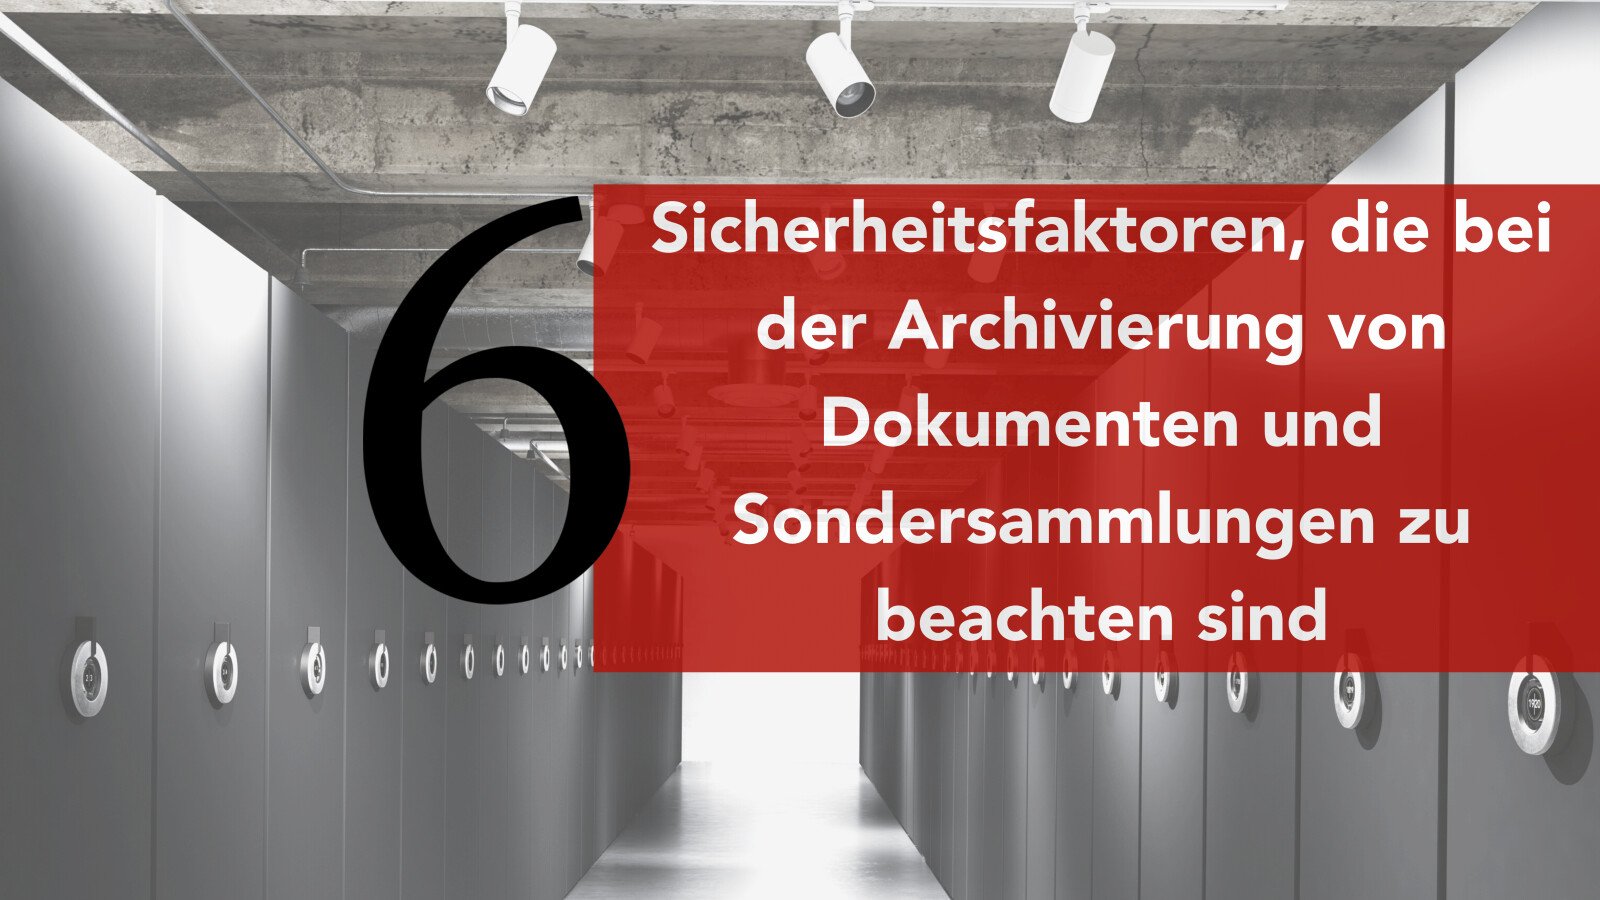 6 Sicherheitsfaktoren, die bei der Archivierung von Dokumenten und Sondersammlungen zu beachten sind